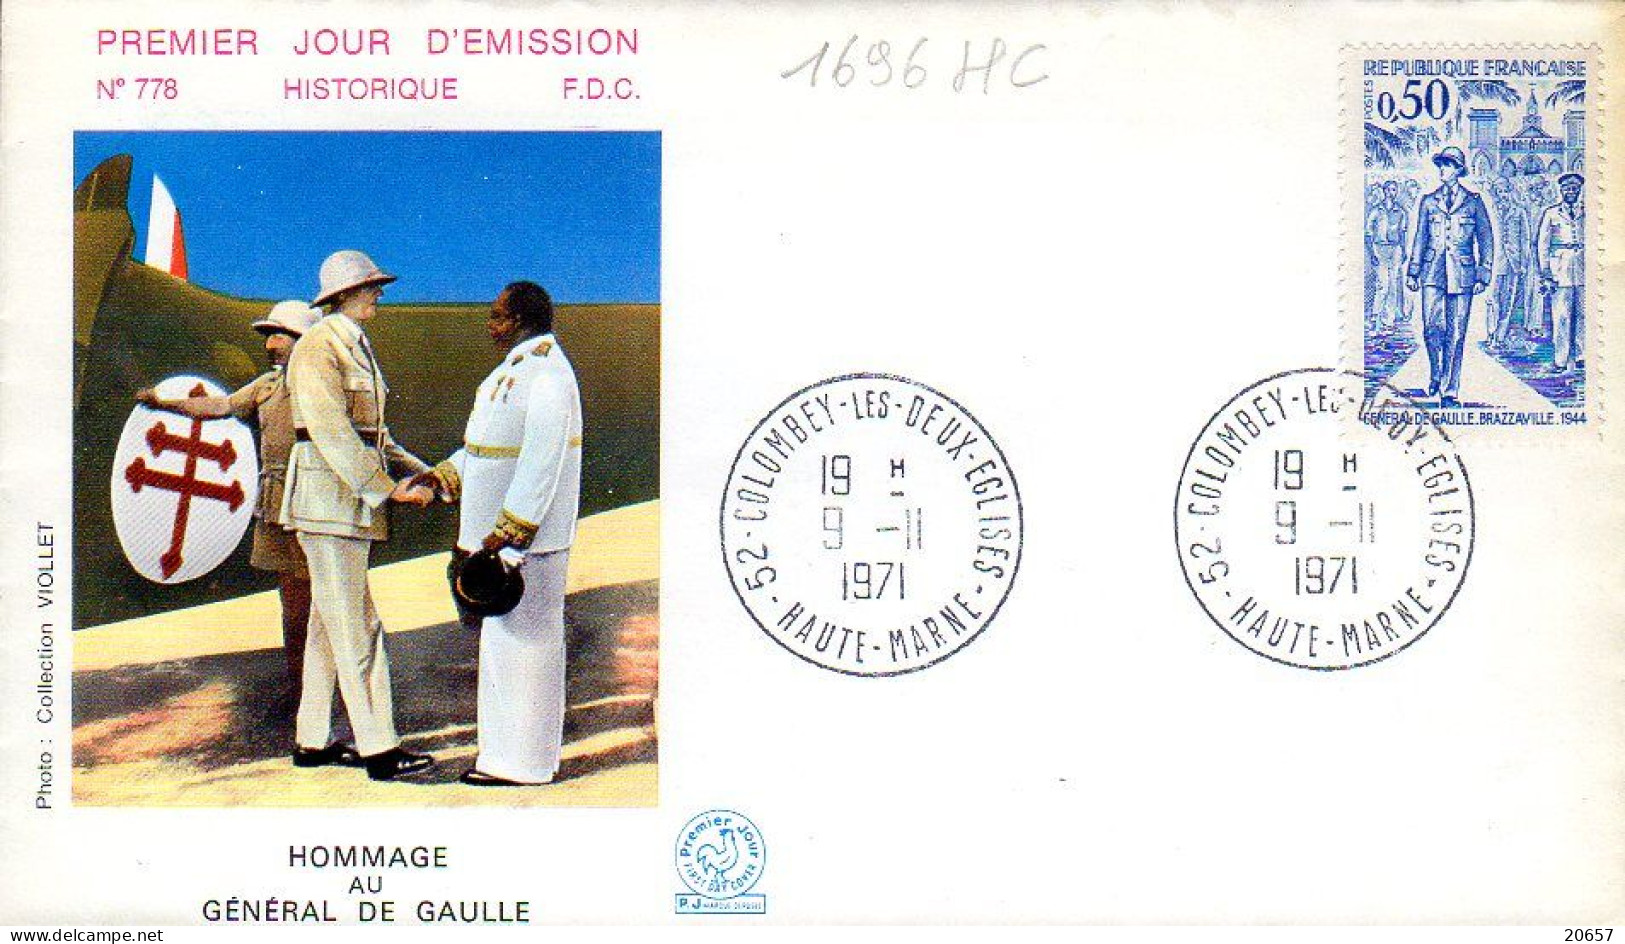 France 1696HC Fdc Hommage Au Général De Gaulle - De Gaulle (Generaal)